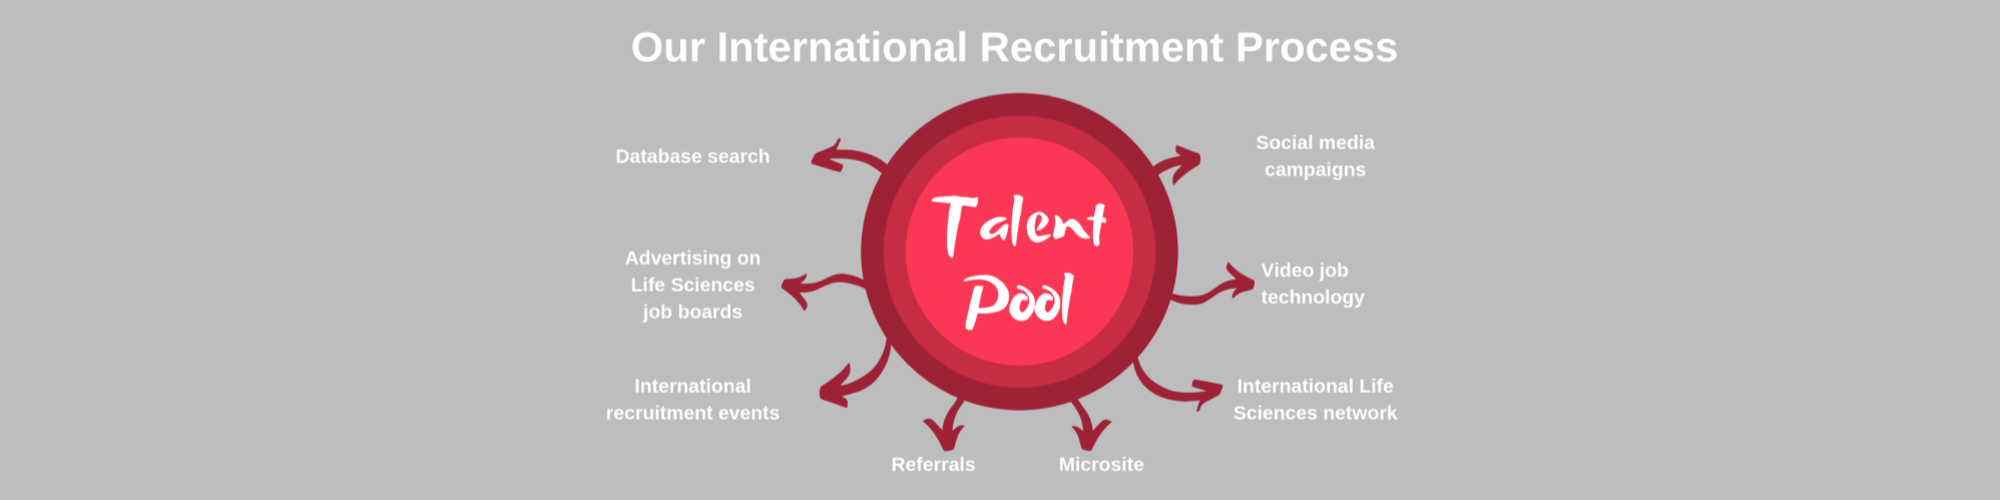 international recruitment process